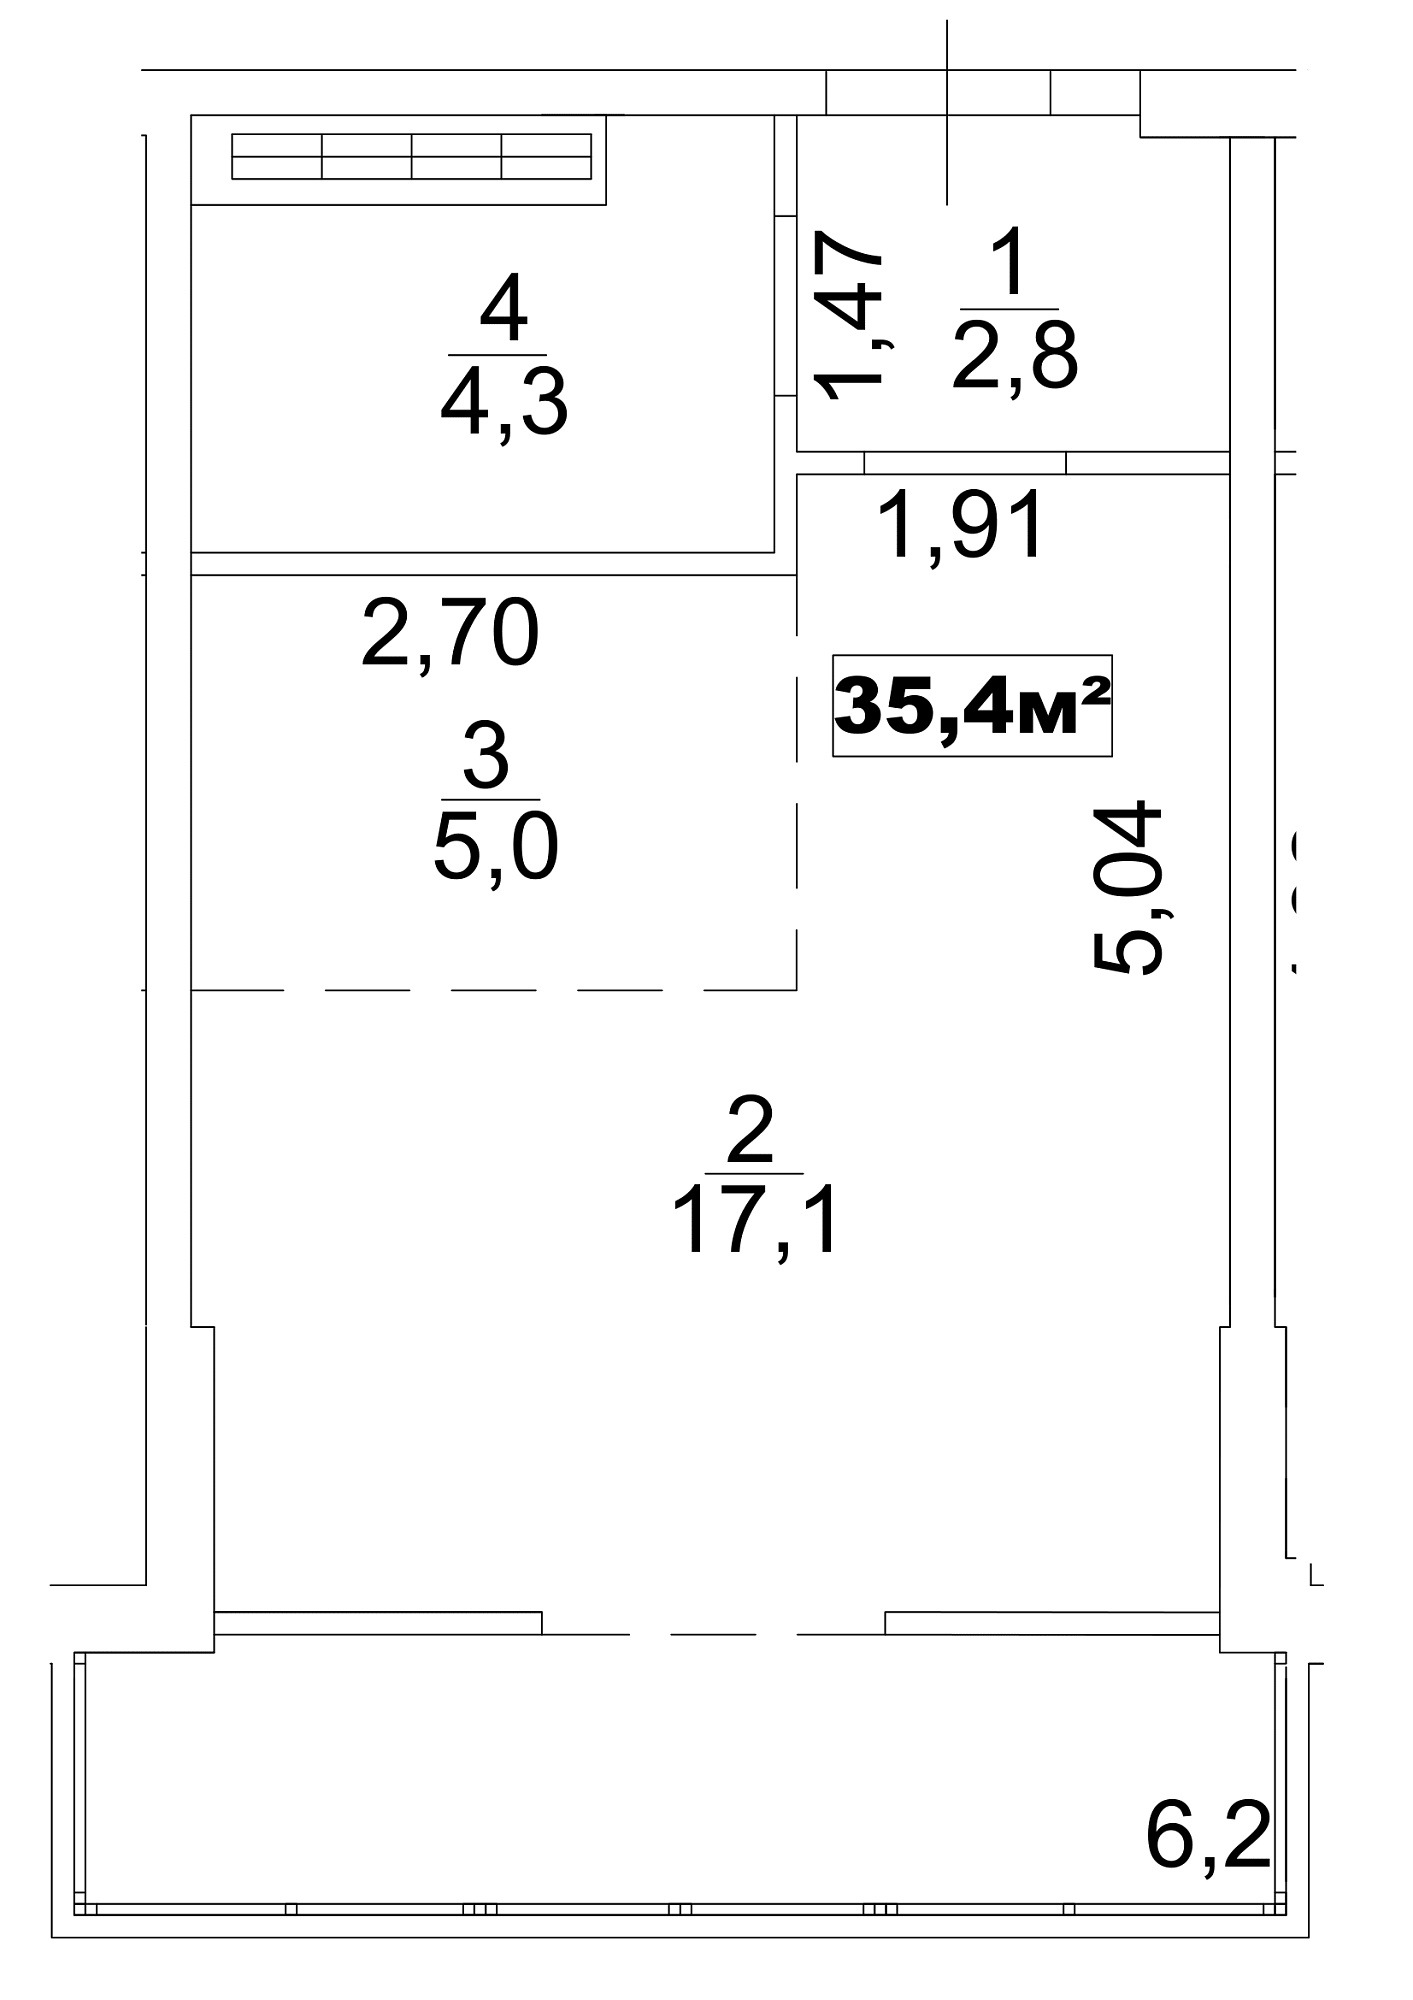 Планування Smart-квартира площею 35.4м2, AB-13-05/0034б.